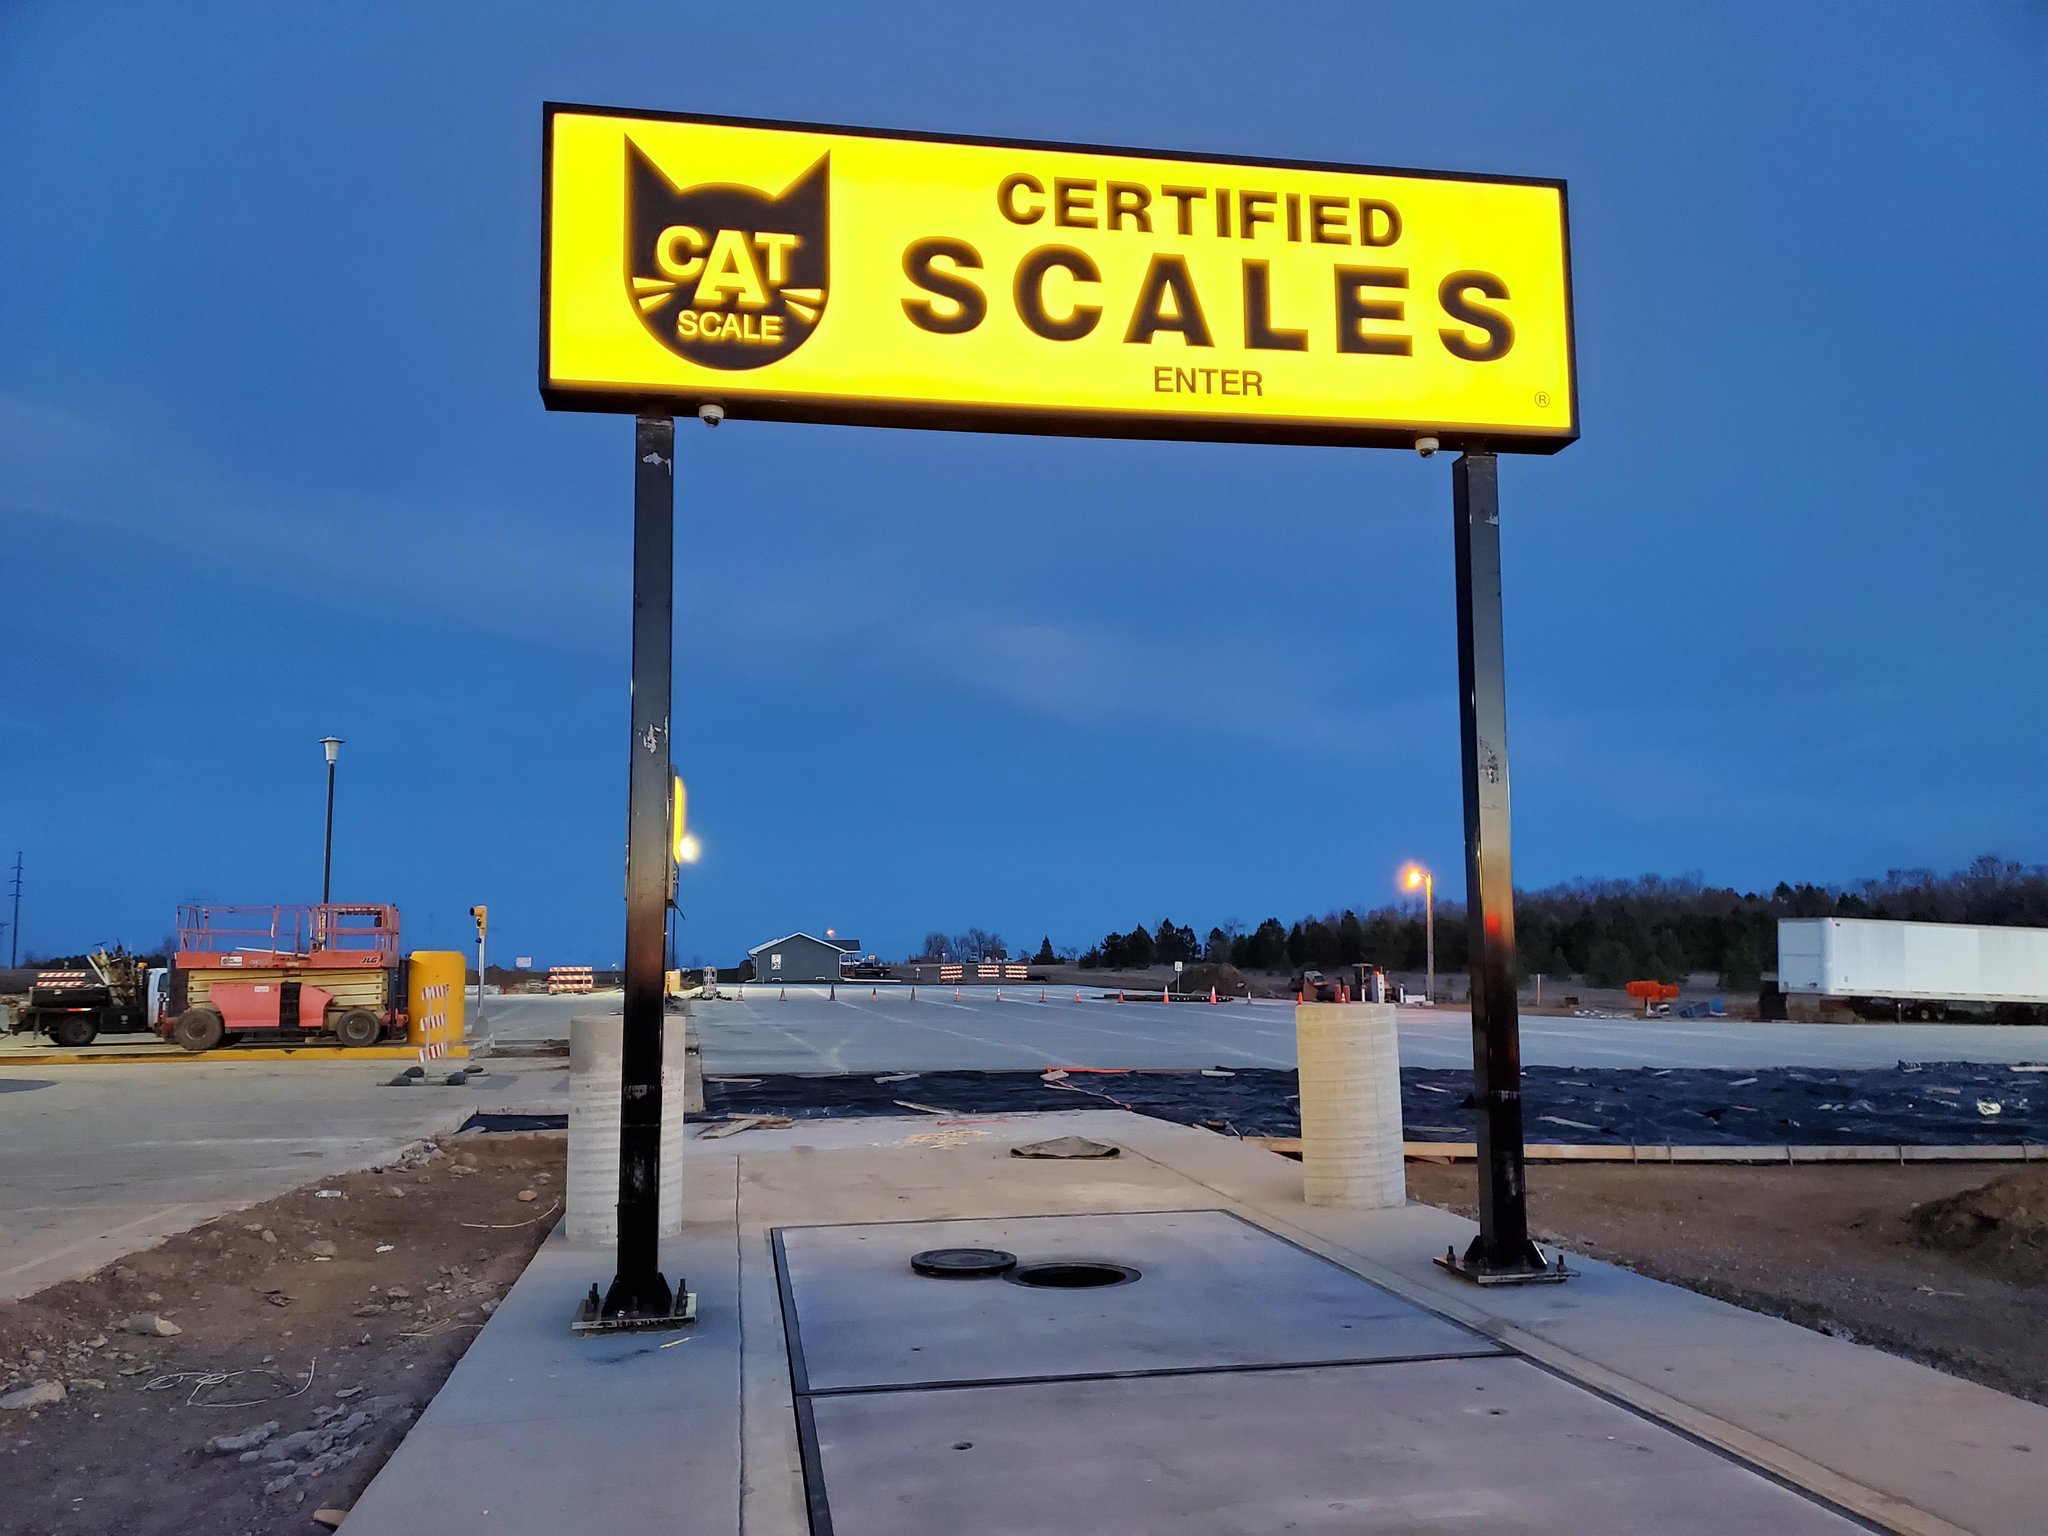 CAT Scale Company (@CATScaleCo) / X